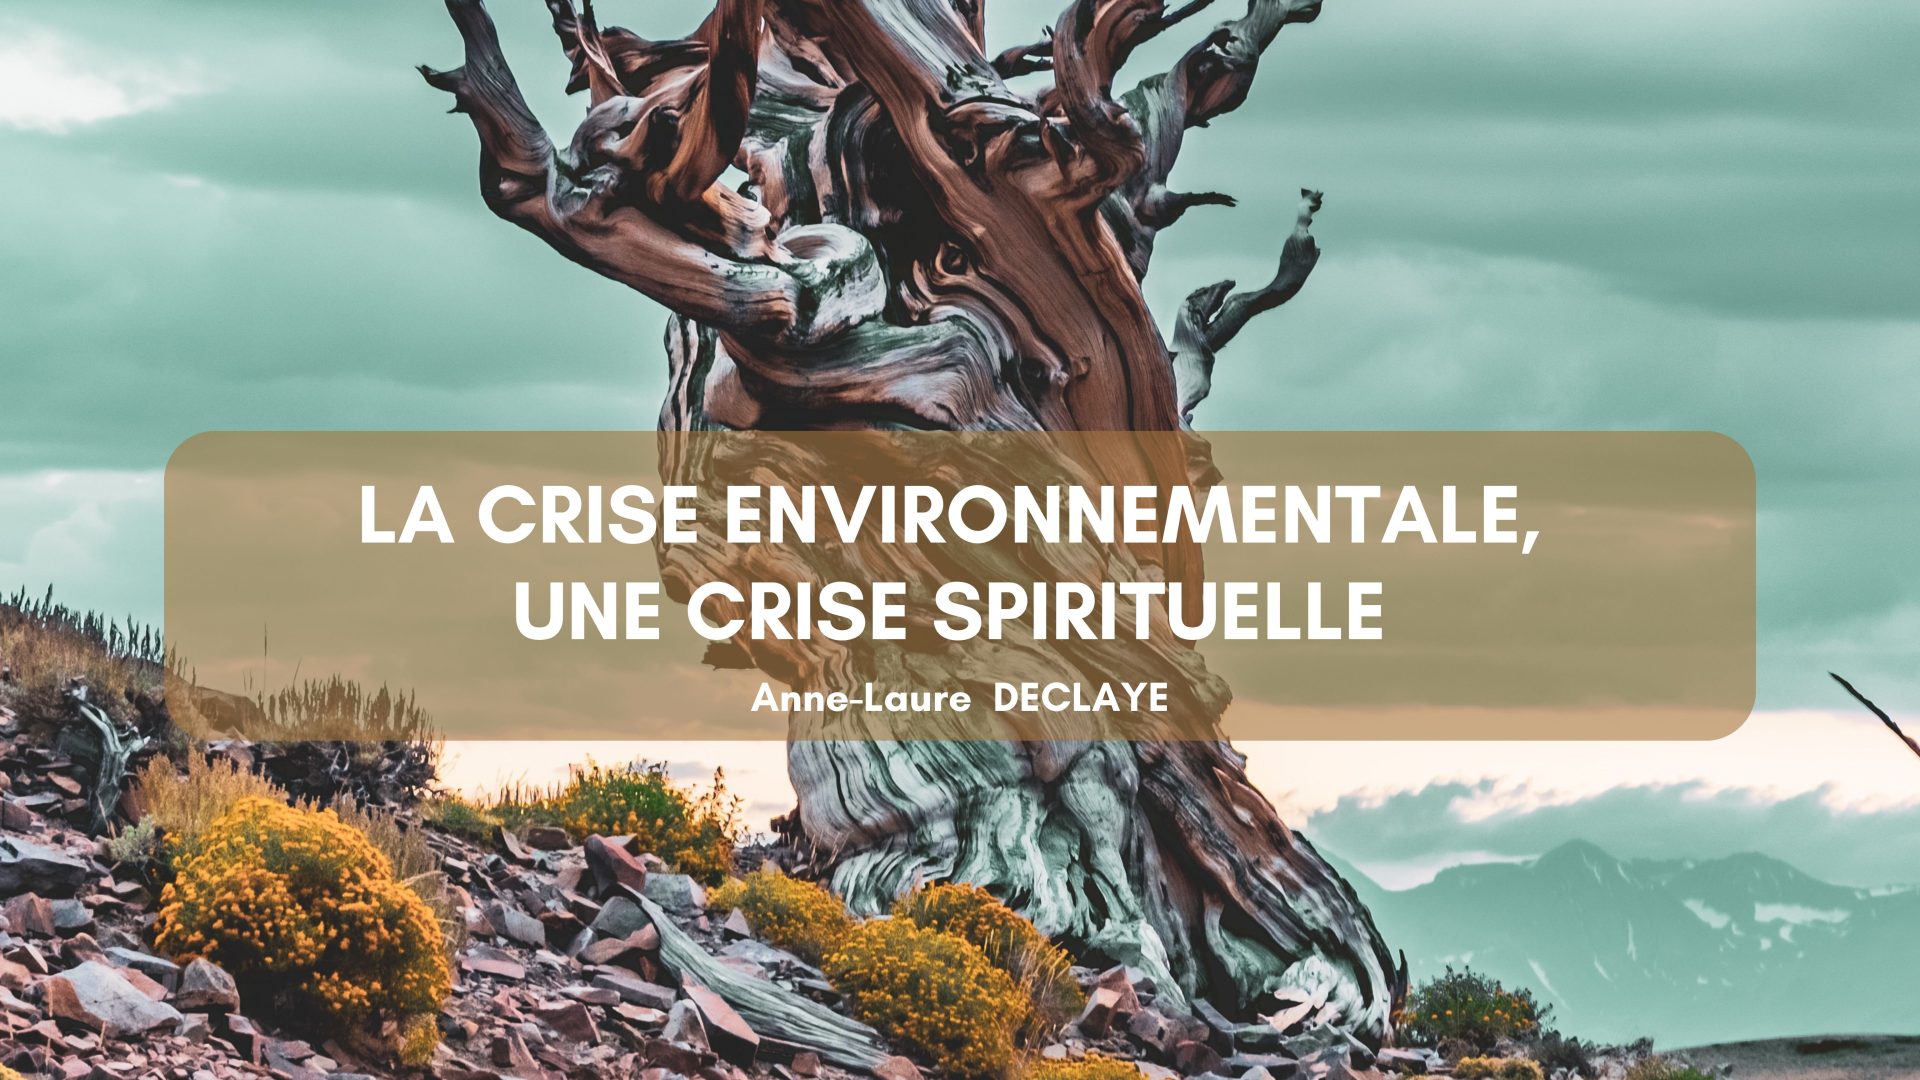 La crise environnementale, une crise spirituelle